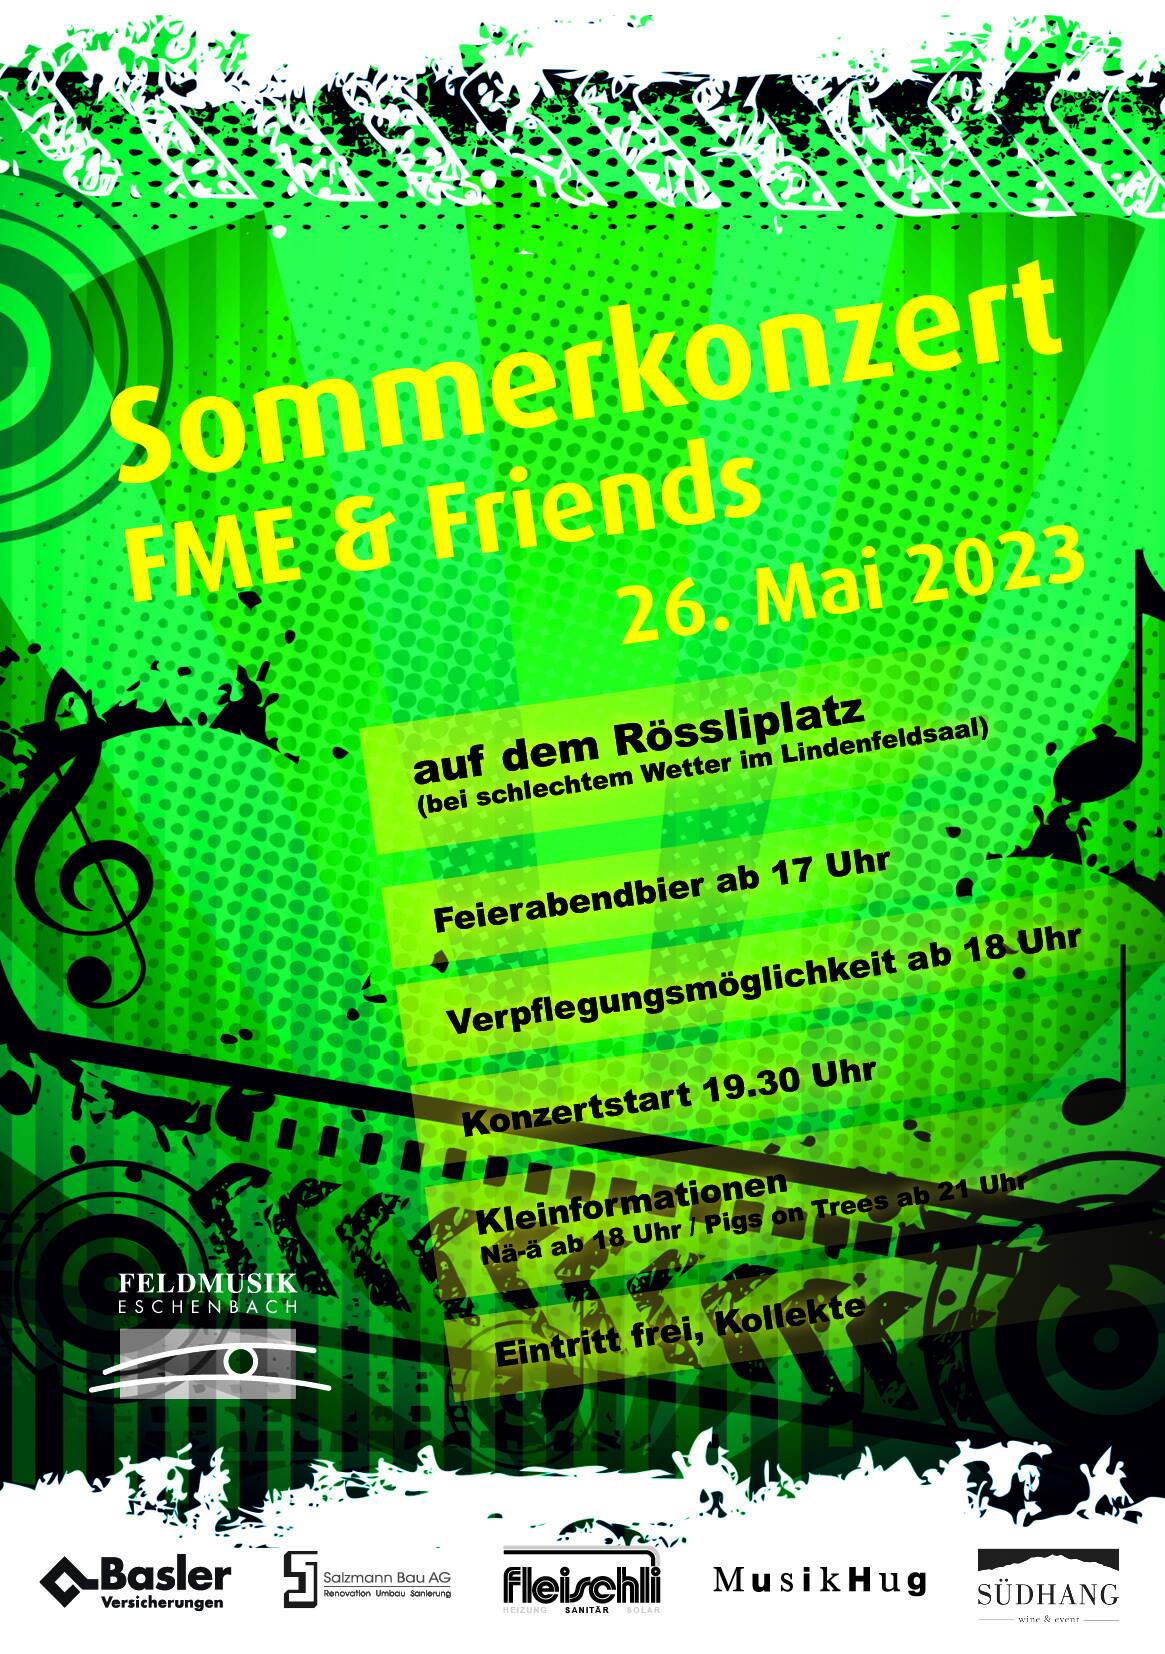 Sommerkonzert FME & Friends